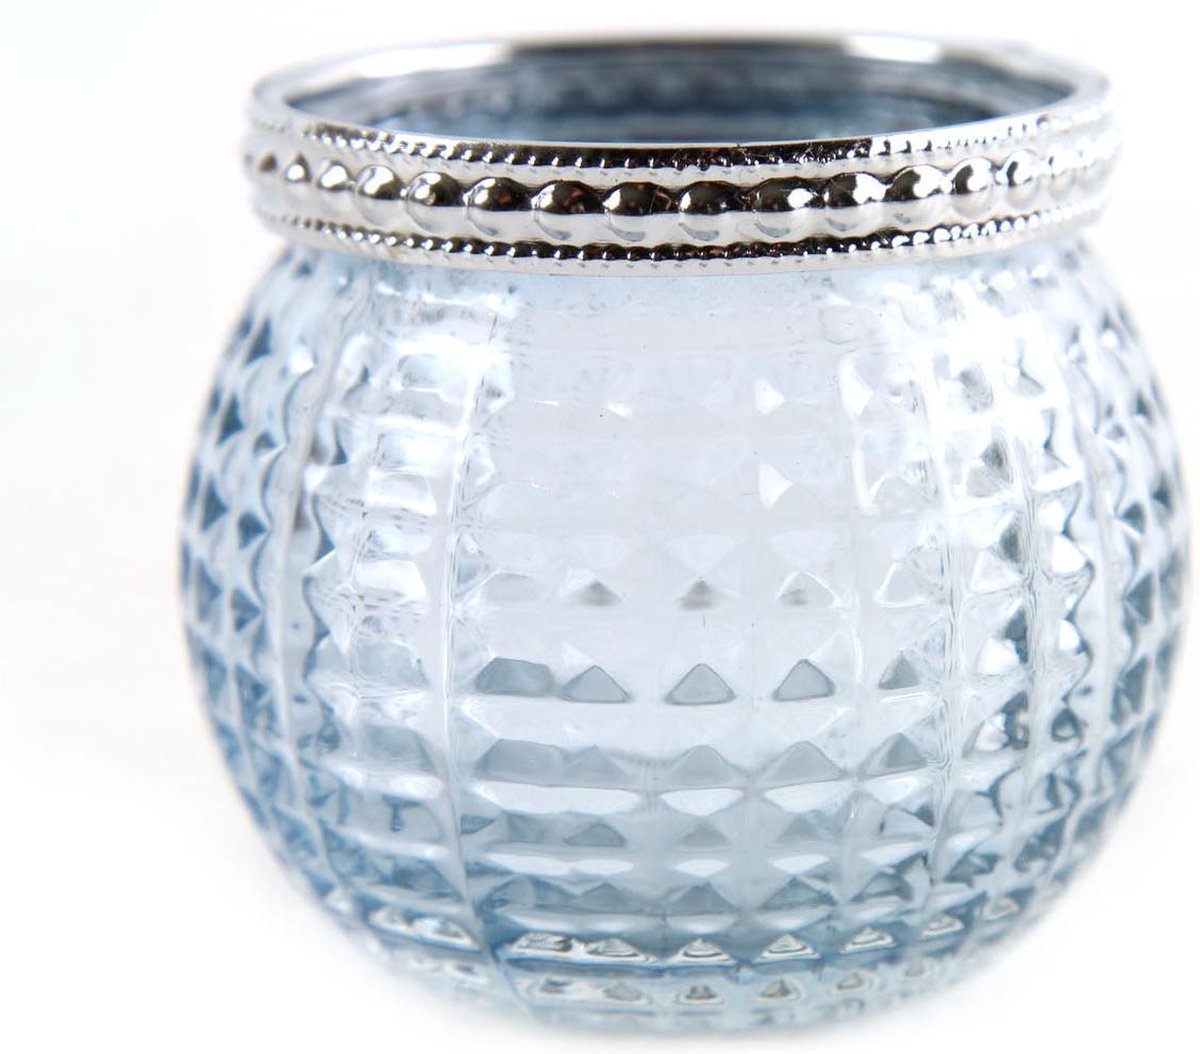 Countryfield Waxinelichthouder Glas per 2 stuks Janna Licht blauw L6 5xB6 5xH5 5cm